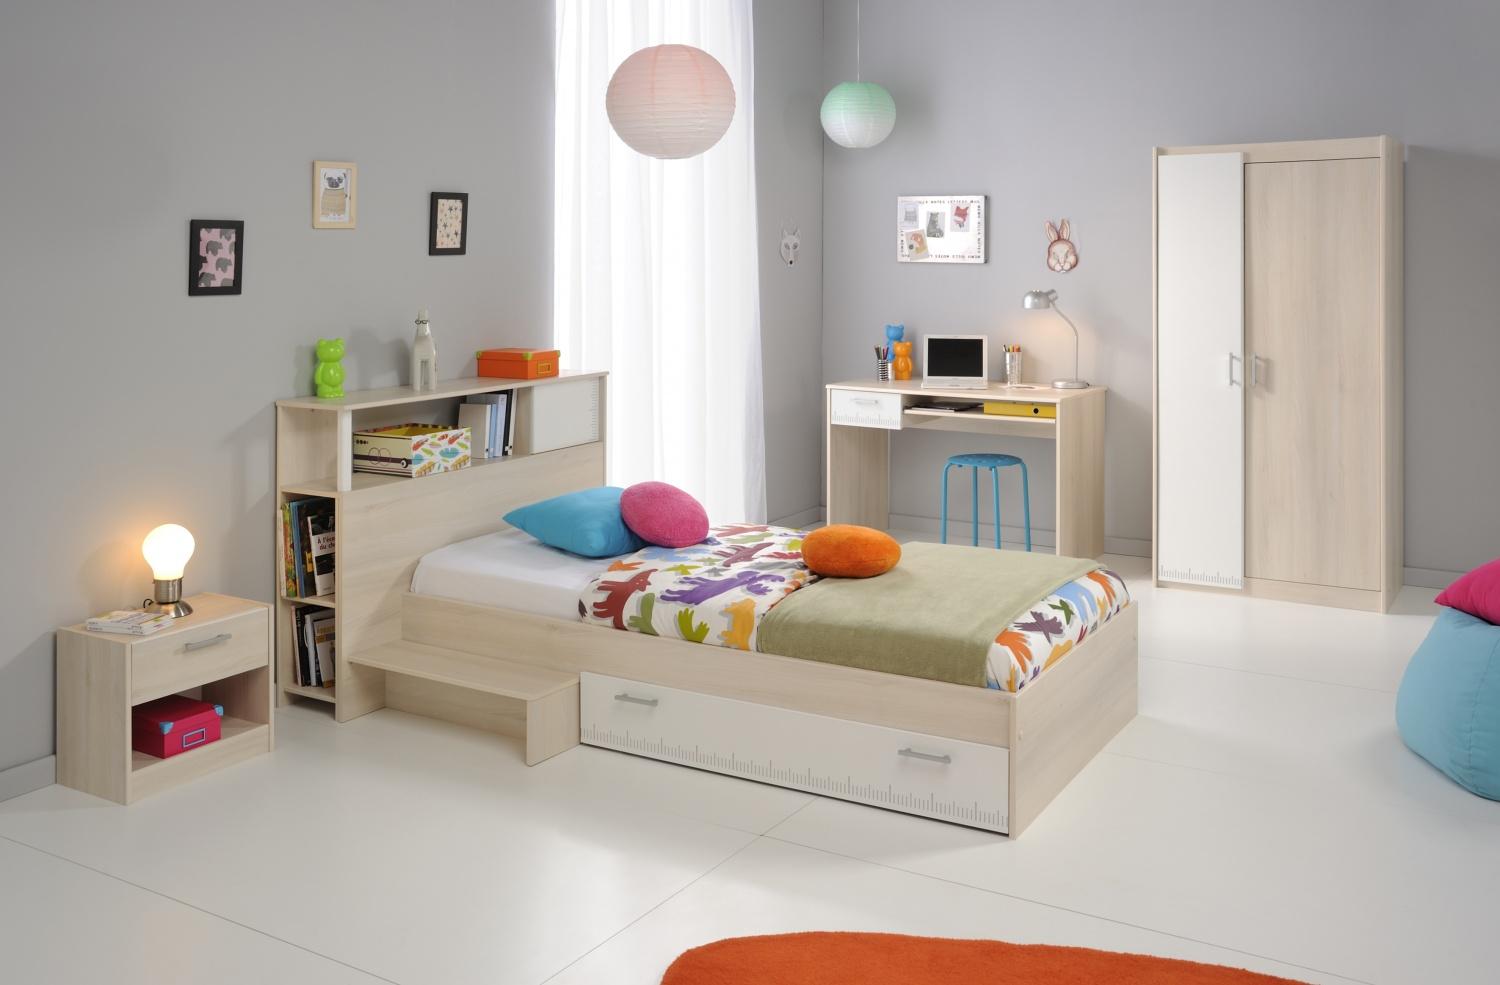 PARISOT 'Tesso' 5-tlg. Kinderzimmer-Set, akazie/weiß, aus Bett 90x200 cm inkl. Bettschublade, Nachttisch, Kleiderschrank, Schreibtisch und Anstellregal Bild 1